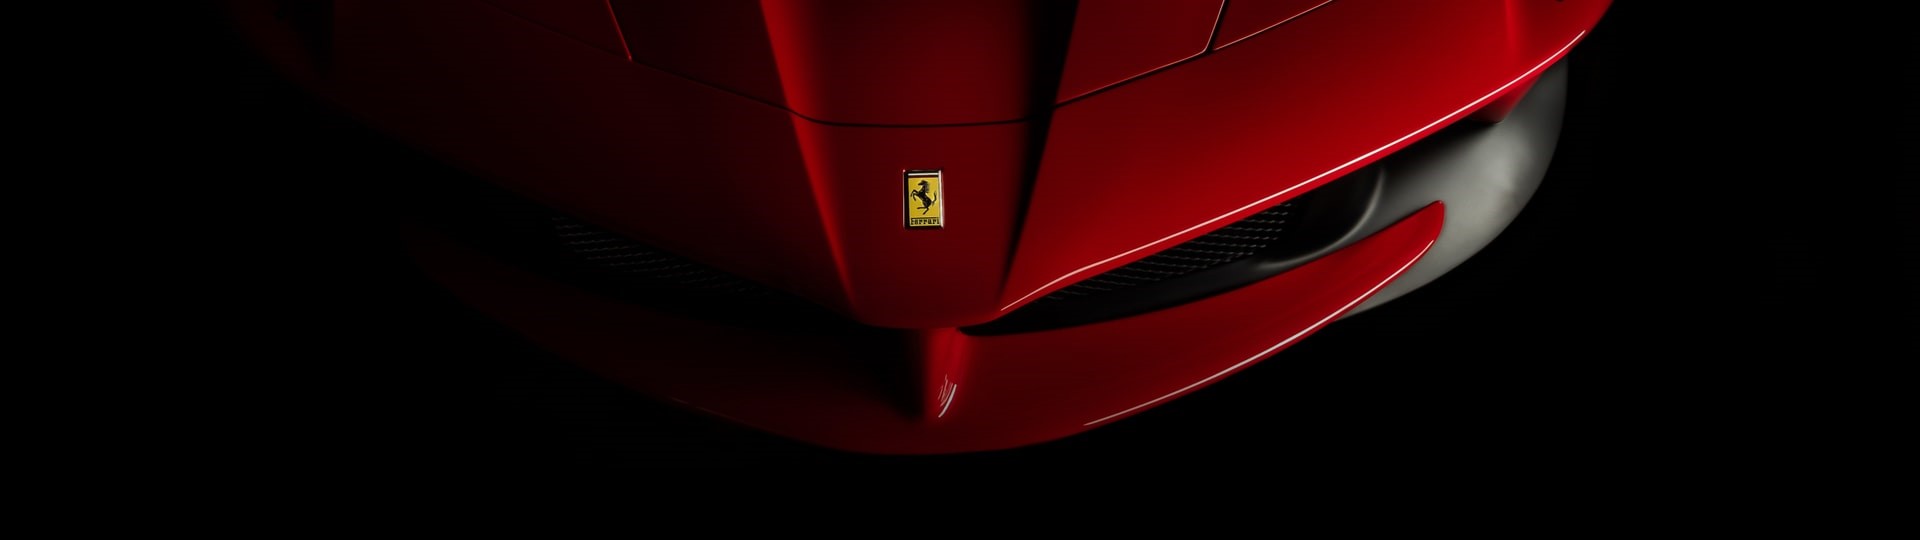 Automobilka Ferrari díky oživení poptávky zvýšila čtvrtletní zisk trojnásobně